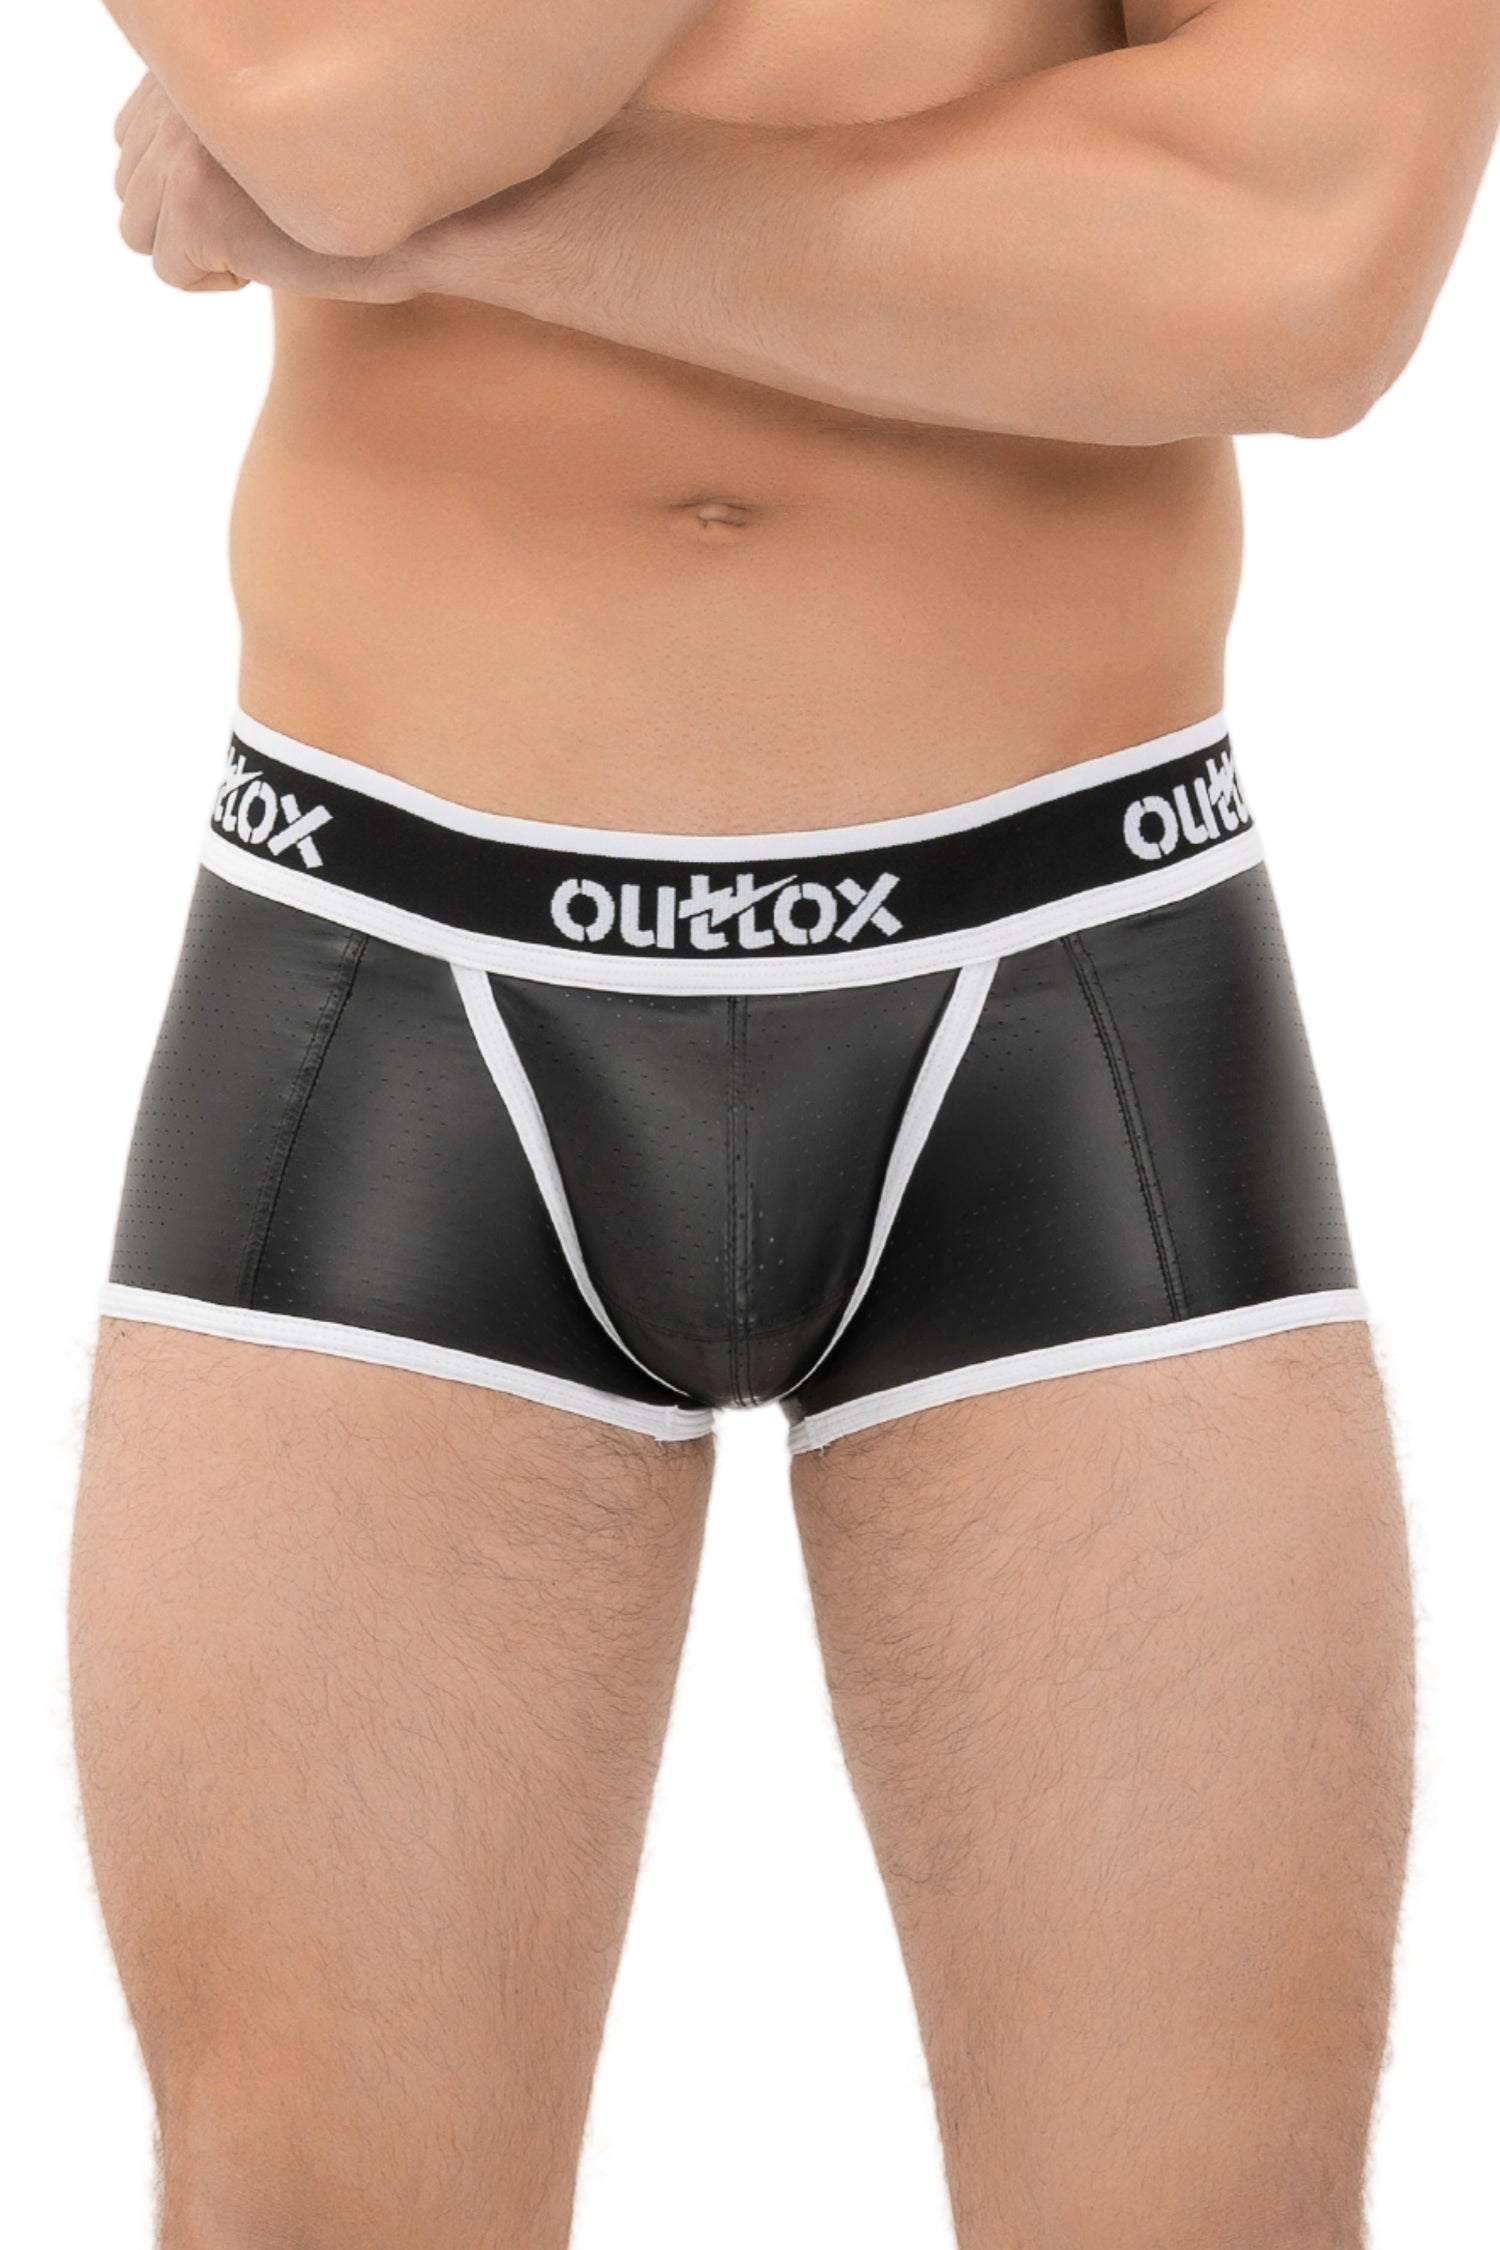 Outtox. Gewickelte Shorts mit Druckknopfverschluss. Schwarz+Weiß